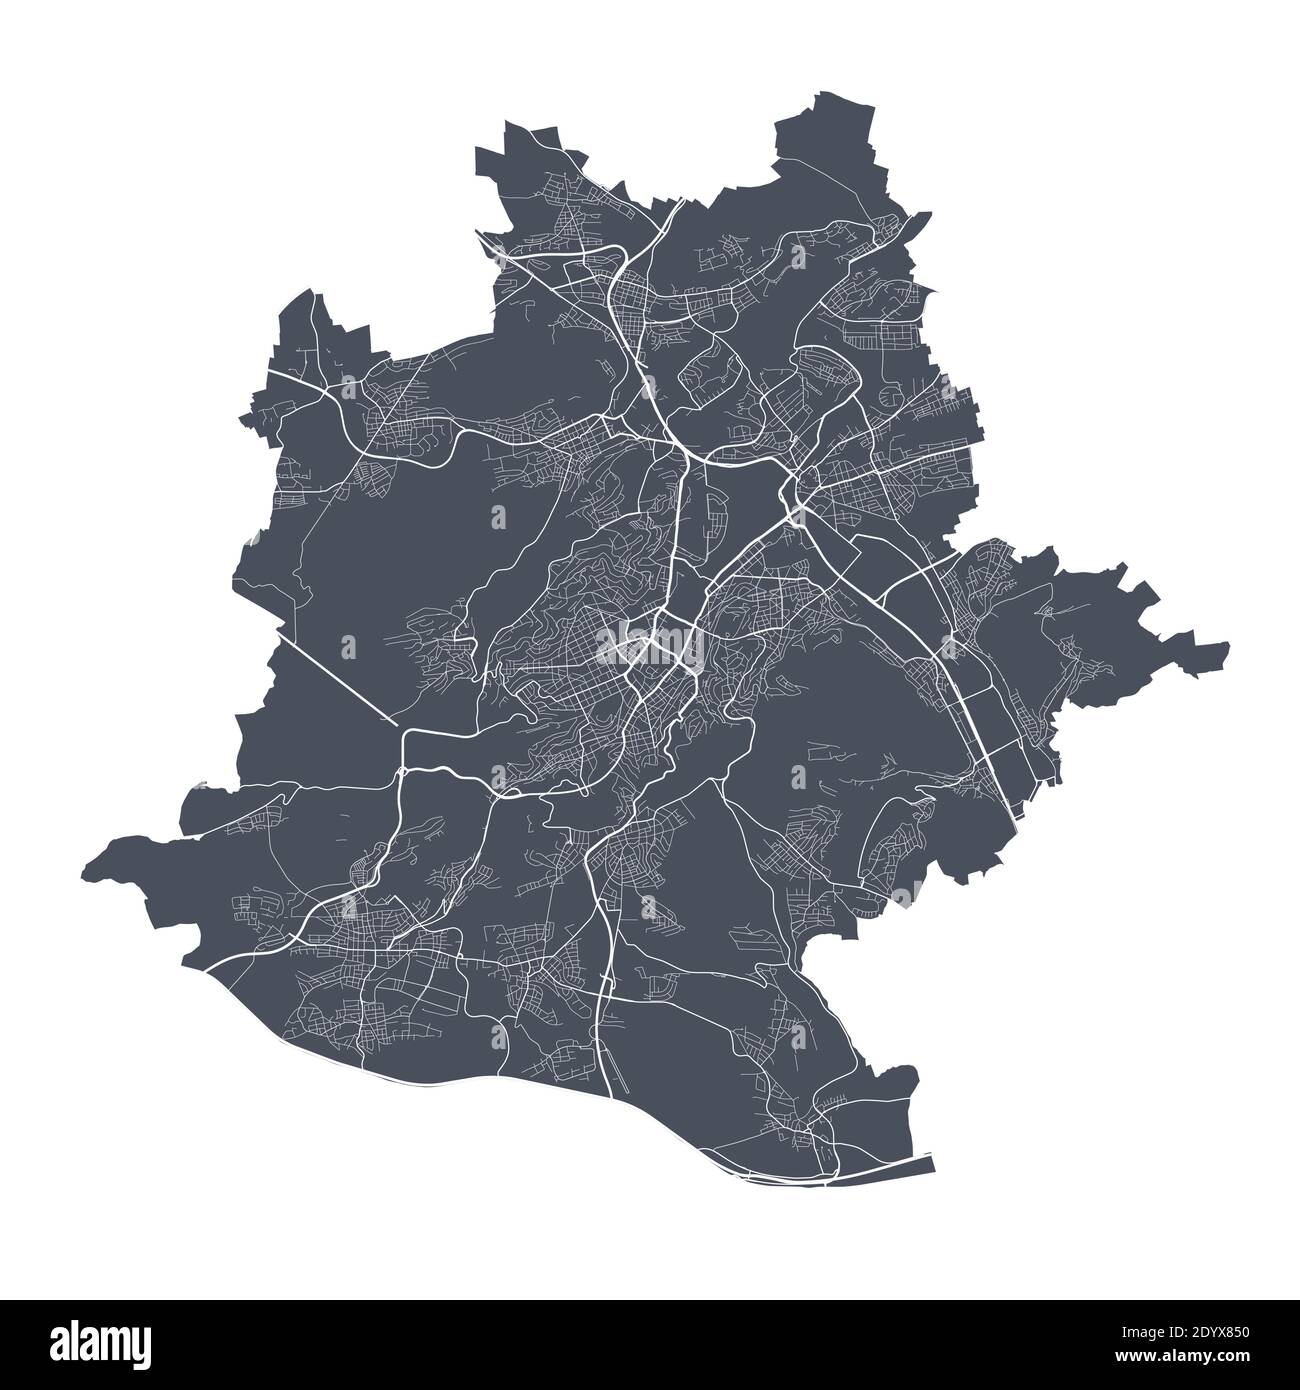 Stuttgart-Karte. Detaillierte Vektorkarte von Stuttgart Stadtverwaltung. Dunkles Plakat mit Straßen auf weißem Hintergrund. Stock Vektor